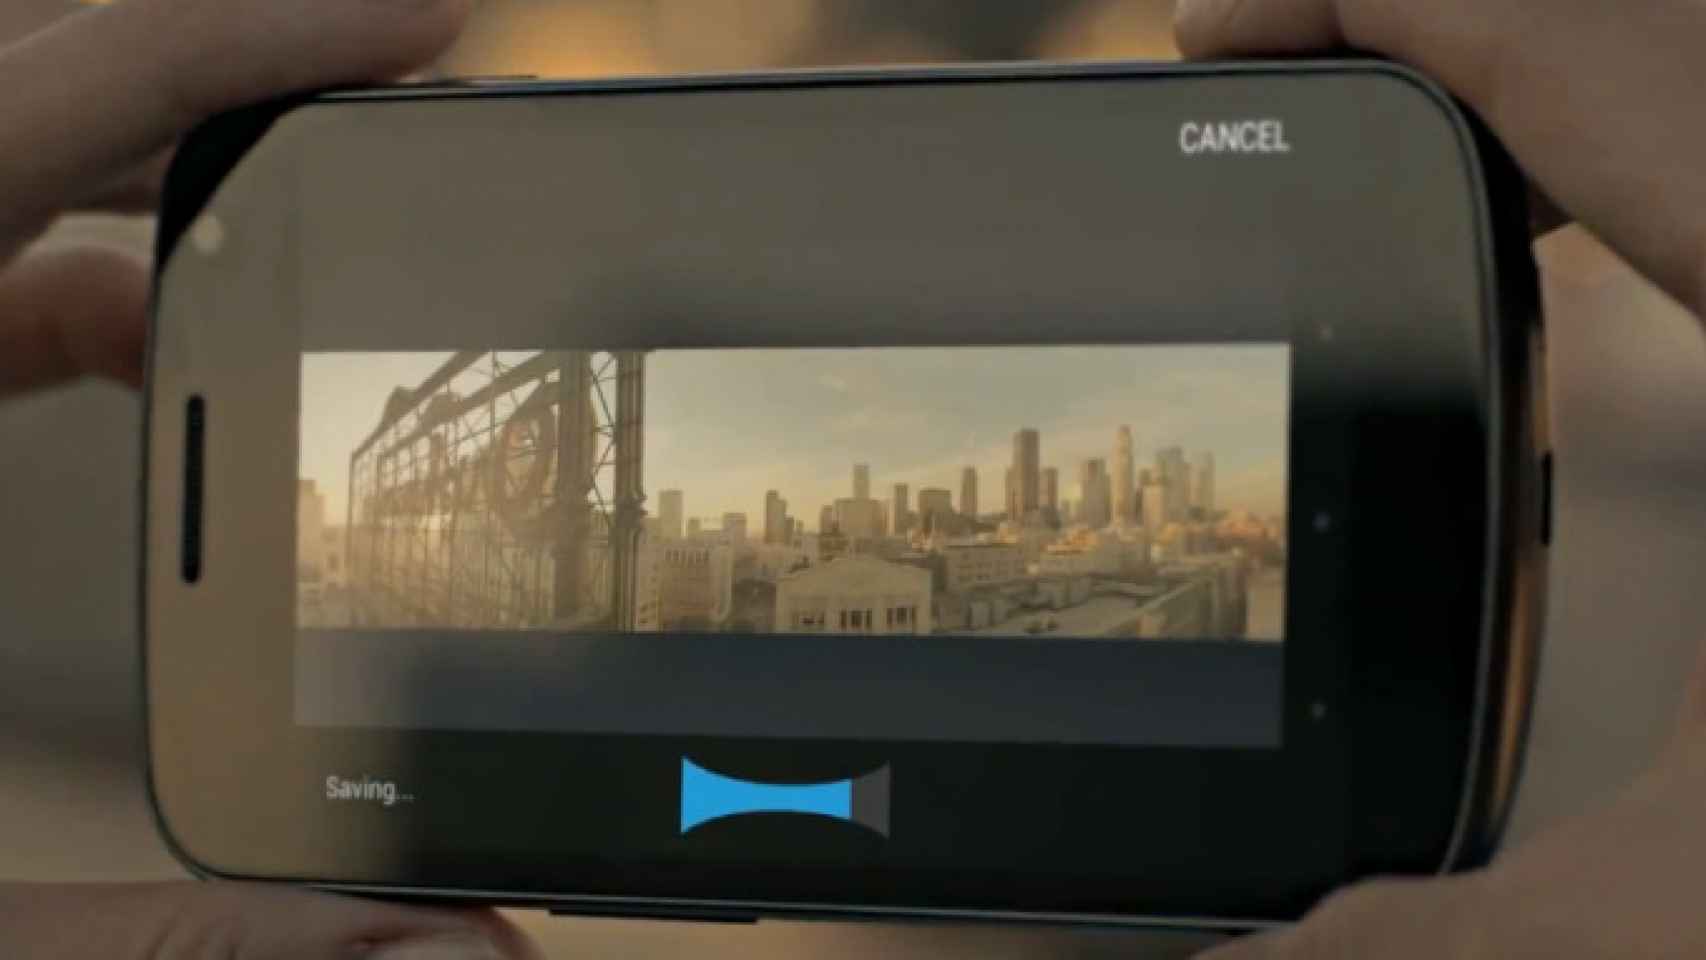 Vídeo promocional de presentación del Galaxy Nexus, hoy a la venta en Europa